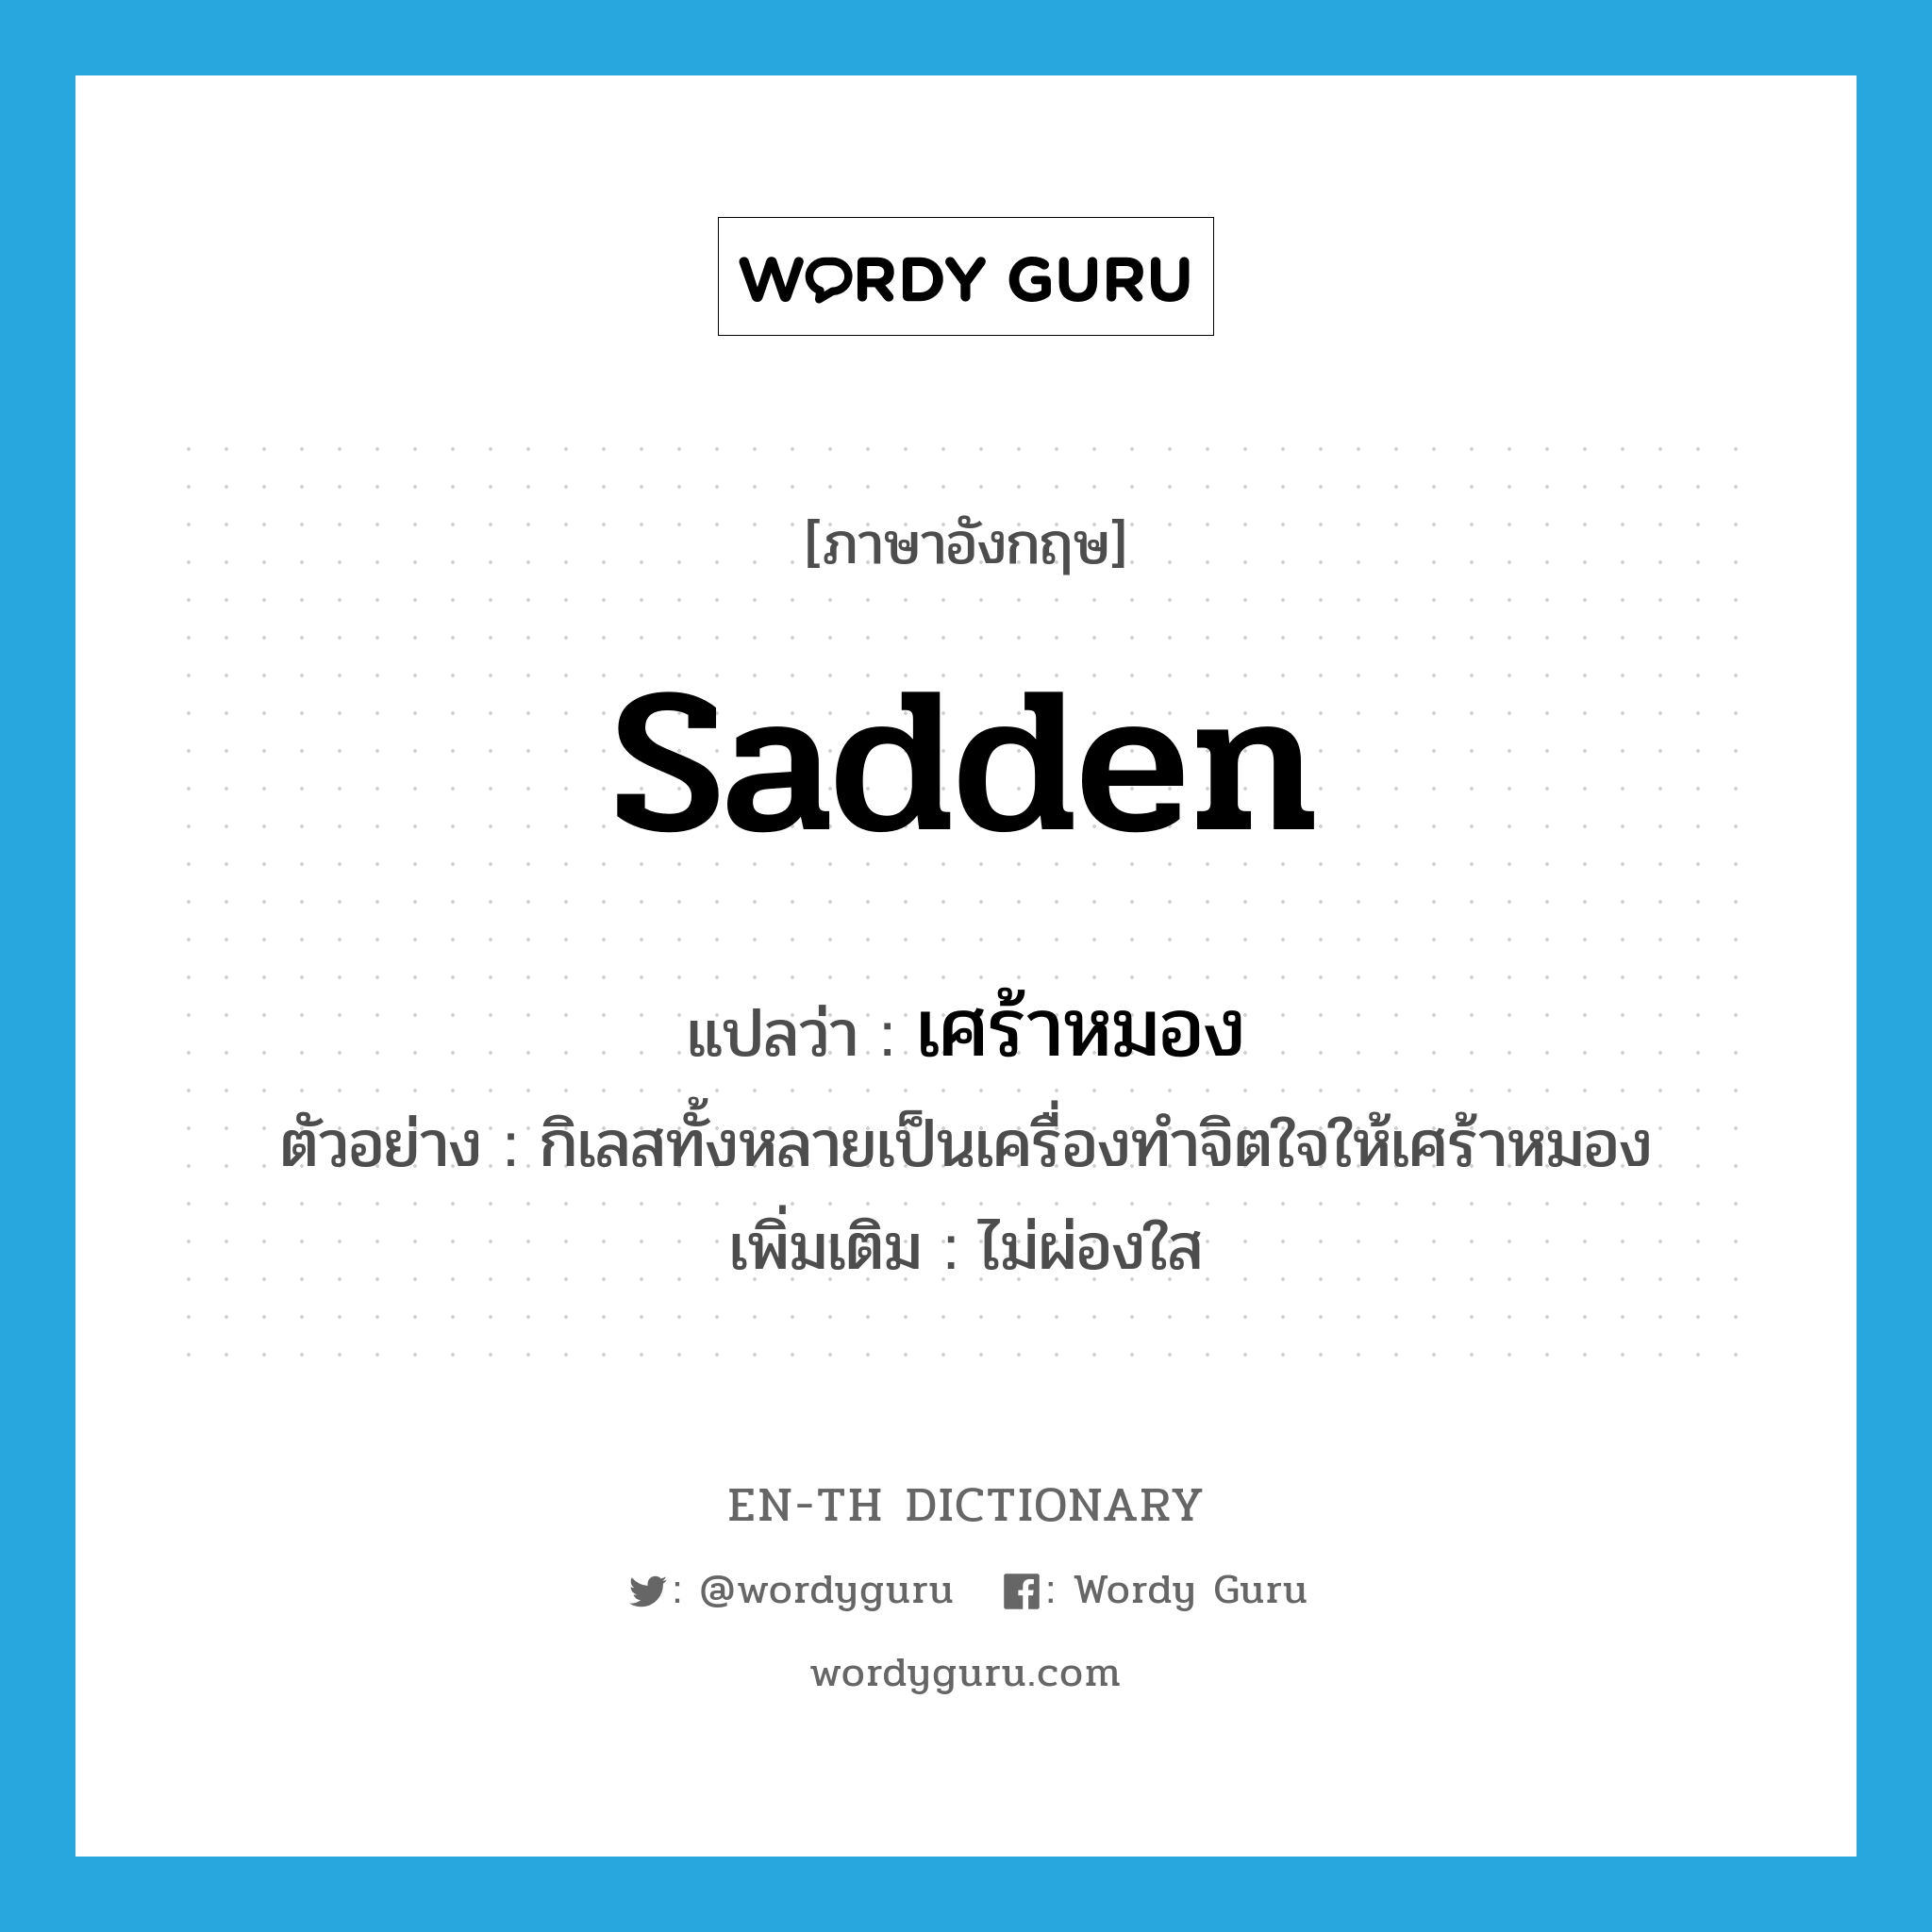 sadden แปลว่า?, คำศัพท์ภาษาอังกฤษ sadden แปลว่า เศร้าหมอง ประเภท V ตัวอย่าง กิเลสทั้งหลายเป็นเครื่องทำจิตใจให้เศร้าหมอง เพิ่มเติม ไม่ผ่องใส หมวด V